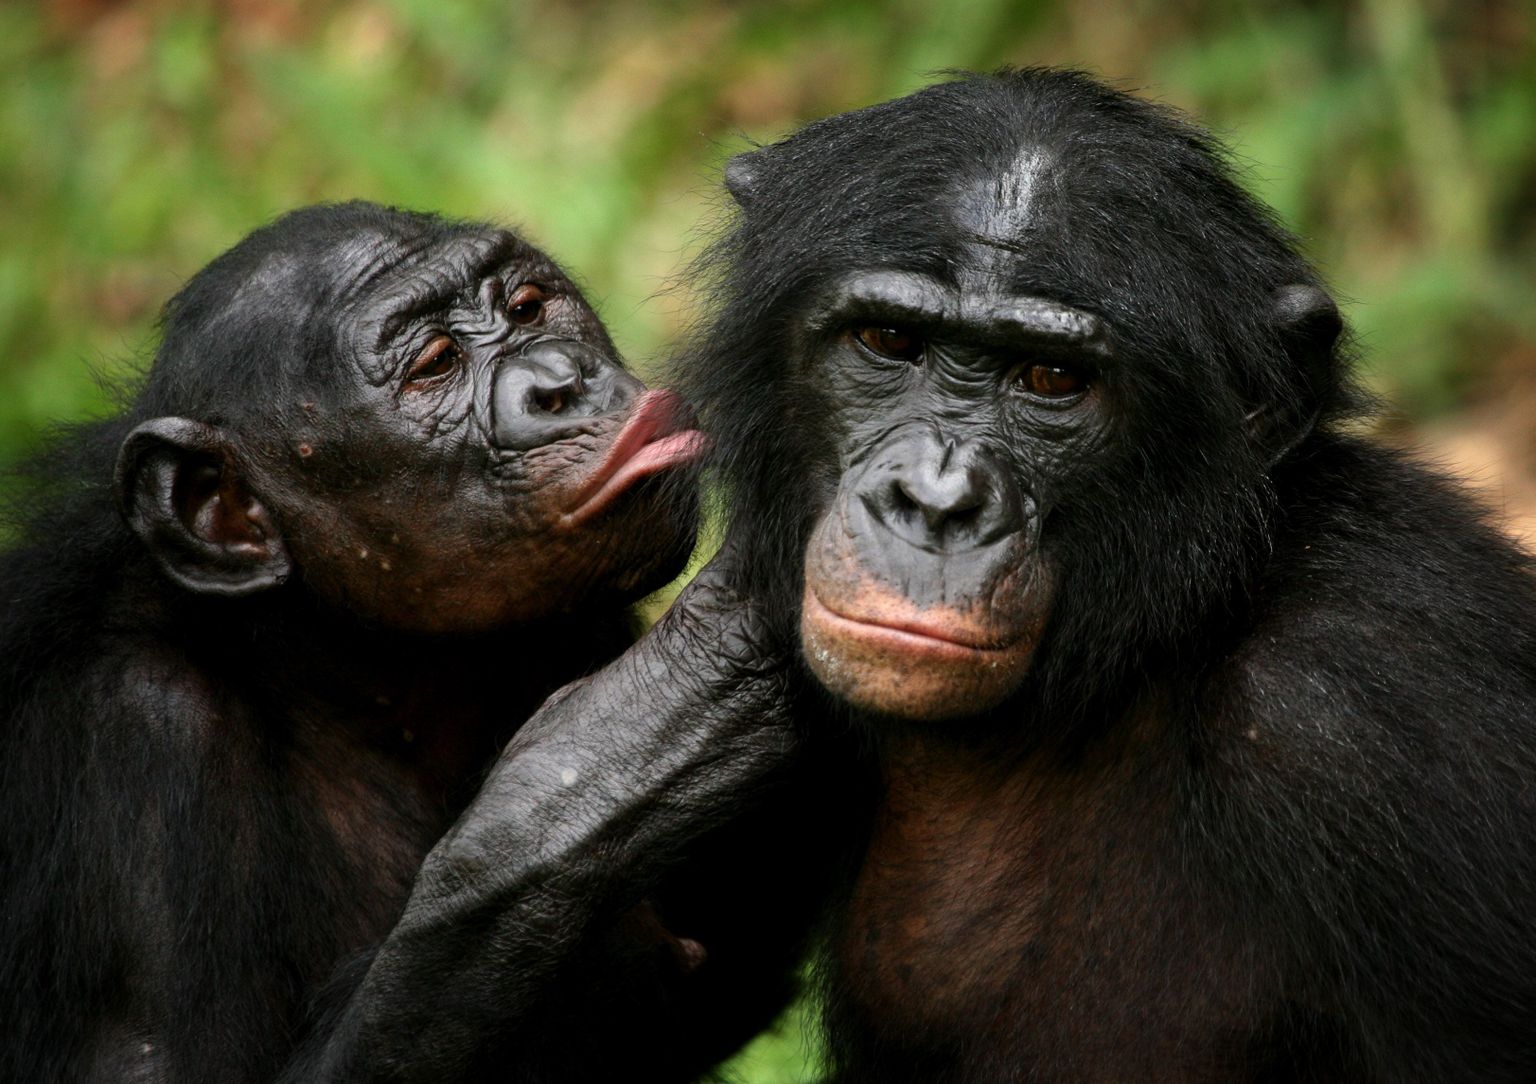 Bonobod on inimesega anatoomiliselt kõige sarnasemad loomad.